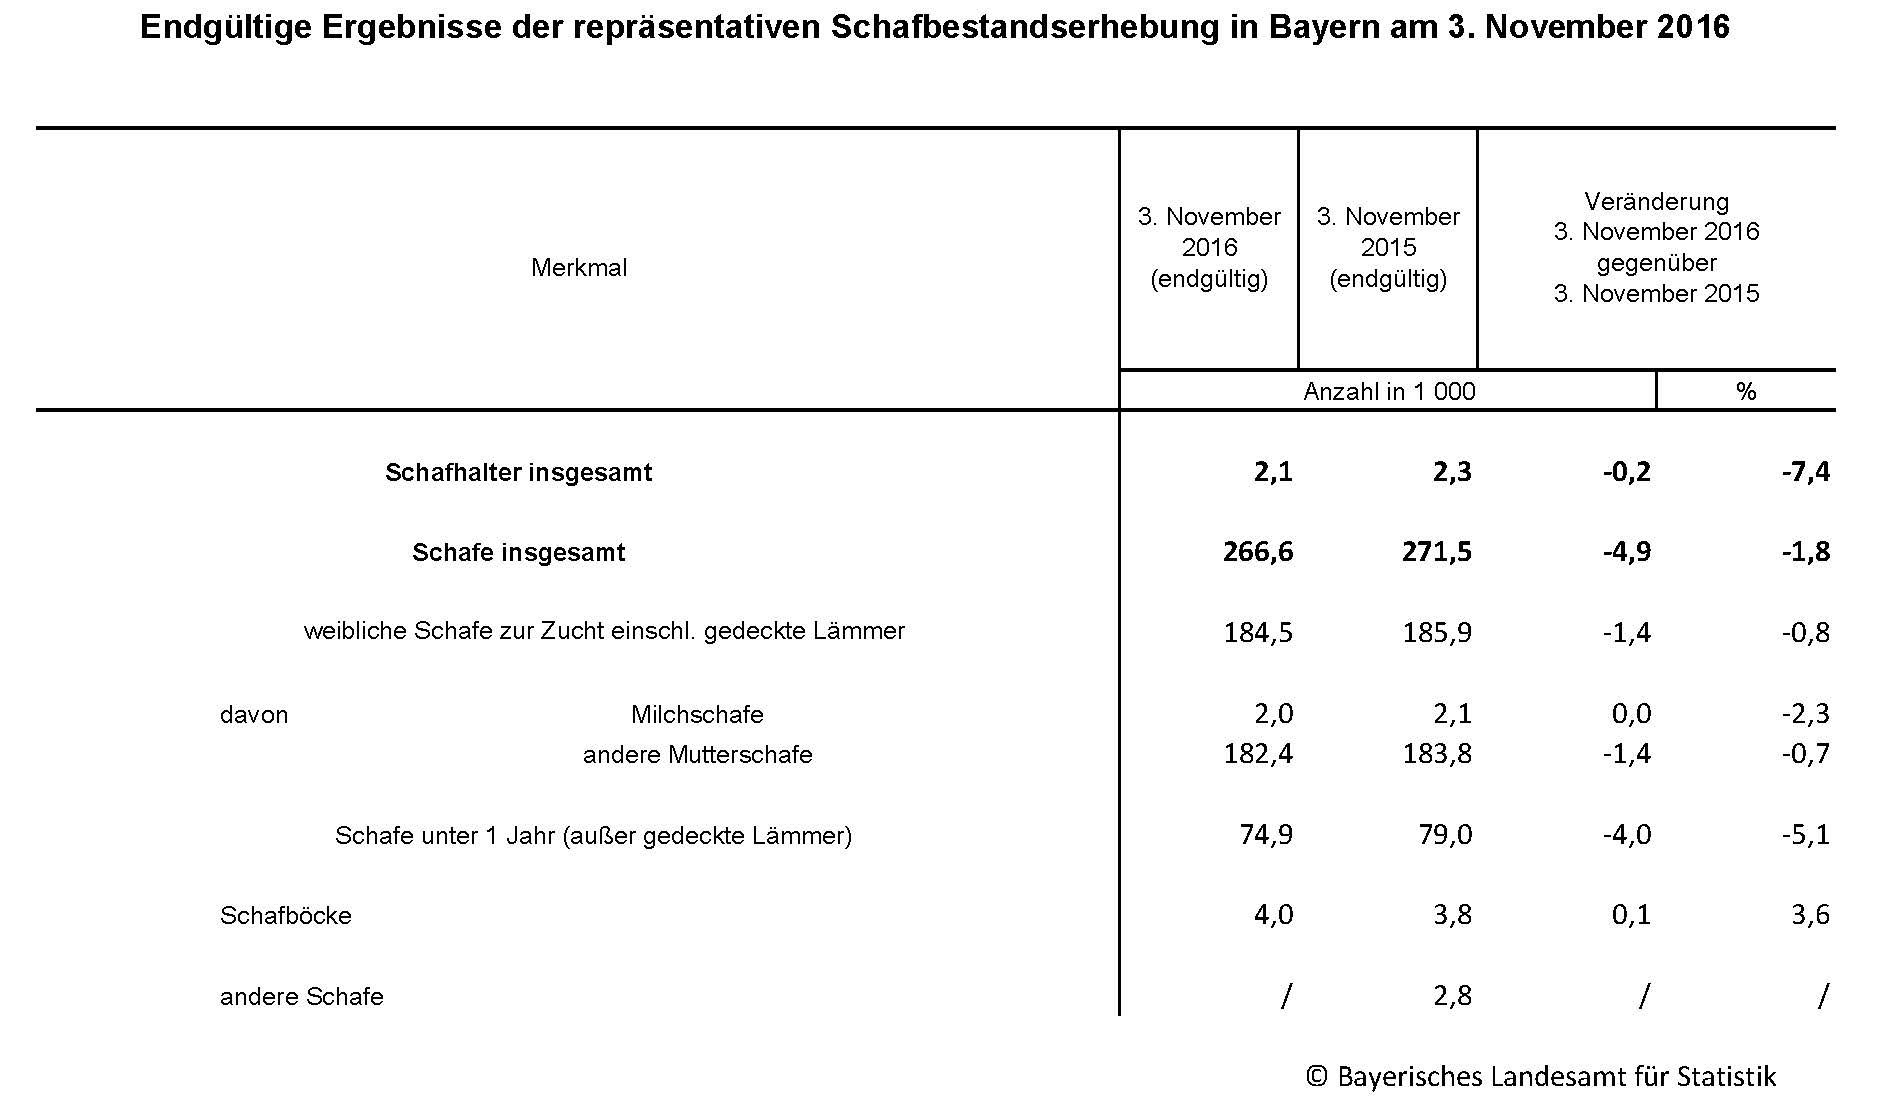 Endgültige Ergebnisse der repräsentativen Schafbestandserhebung in Bayern am 3. November 2016